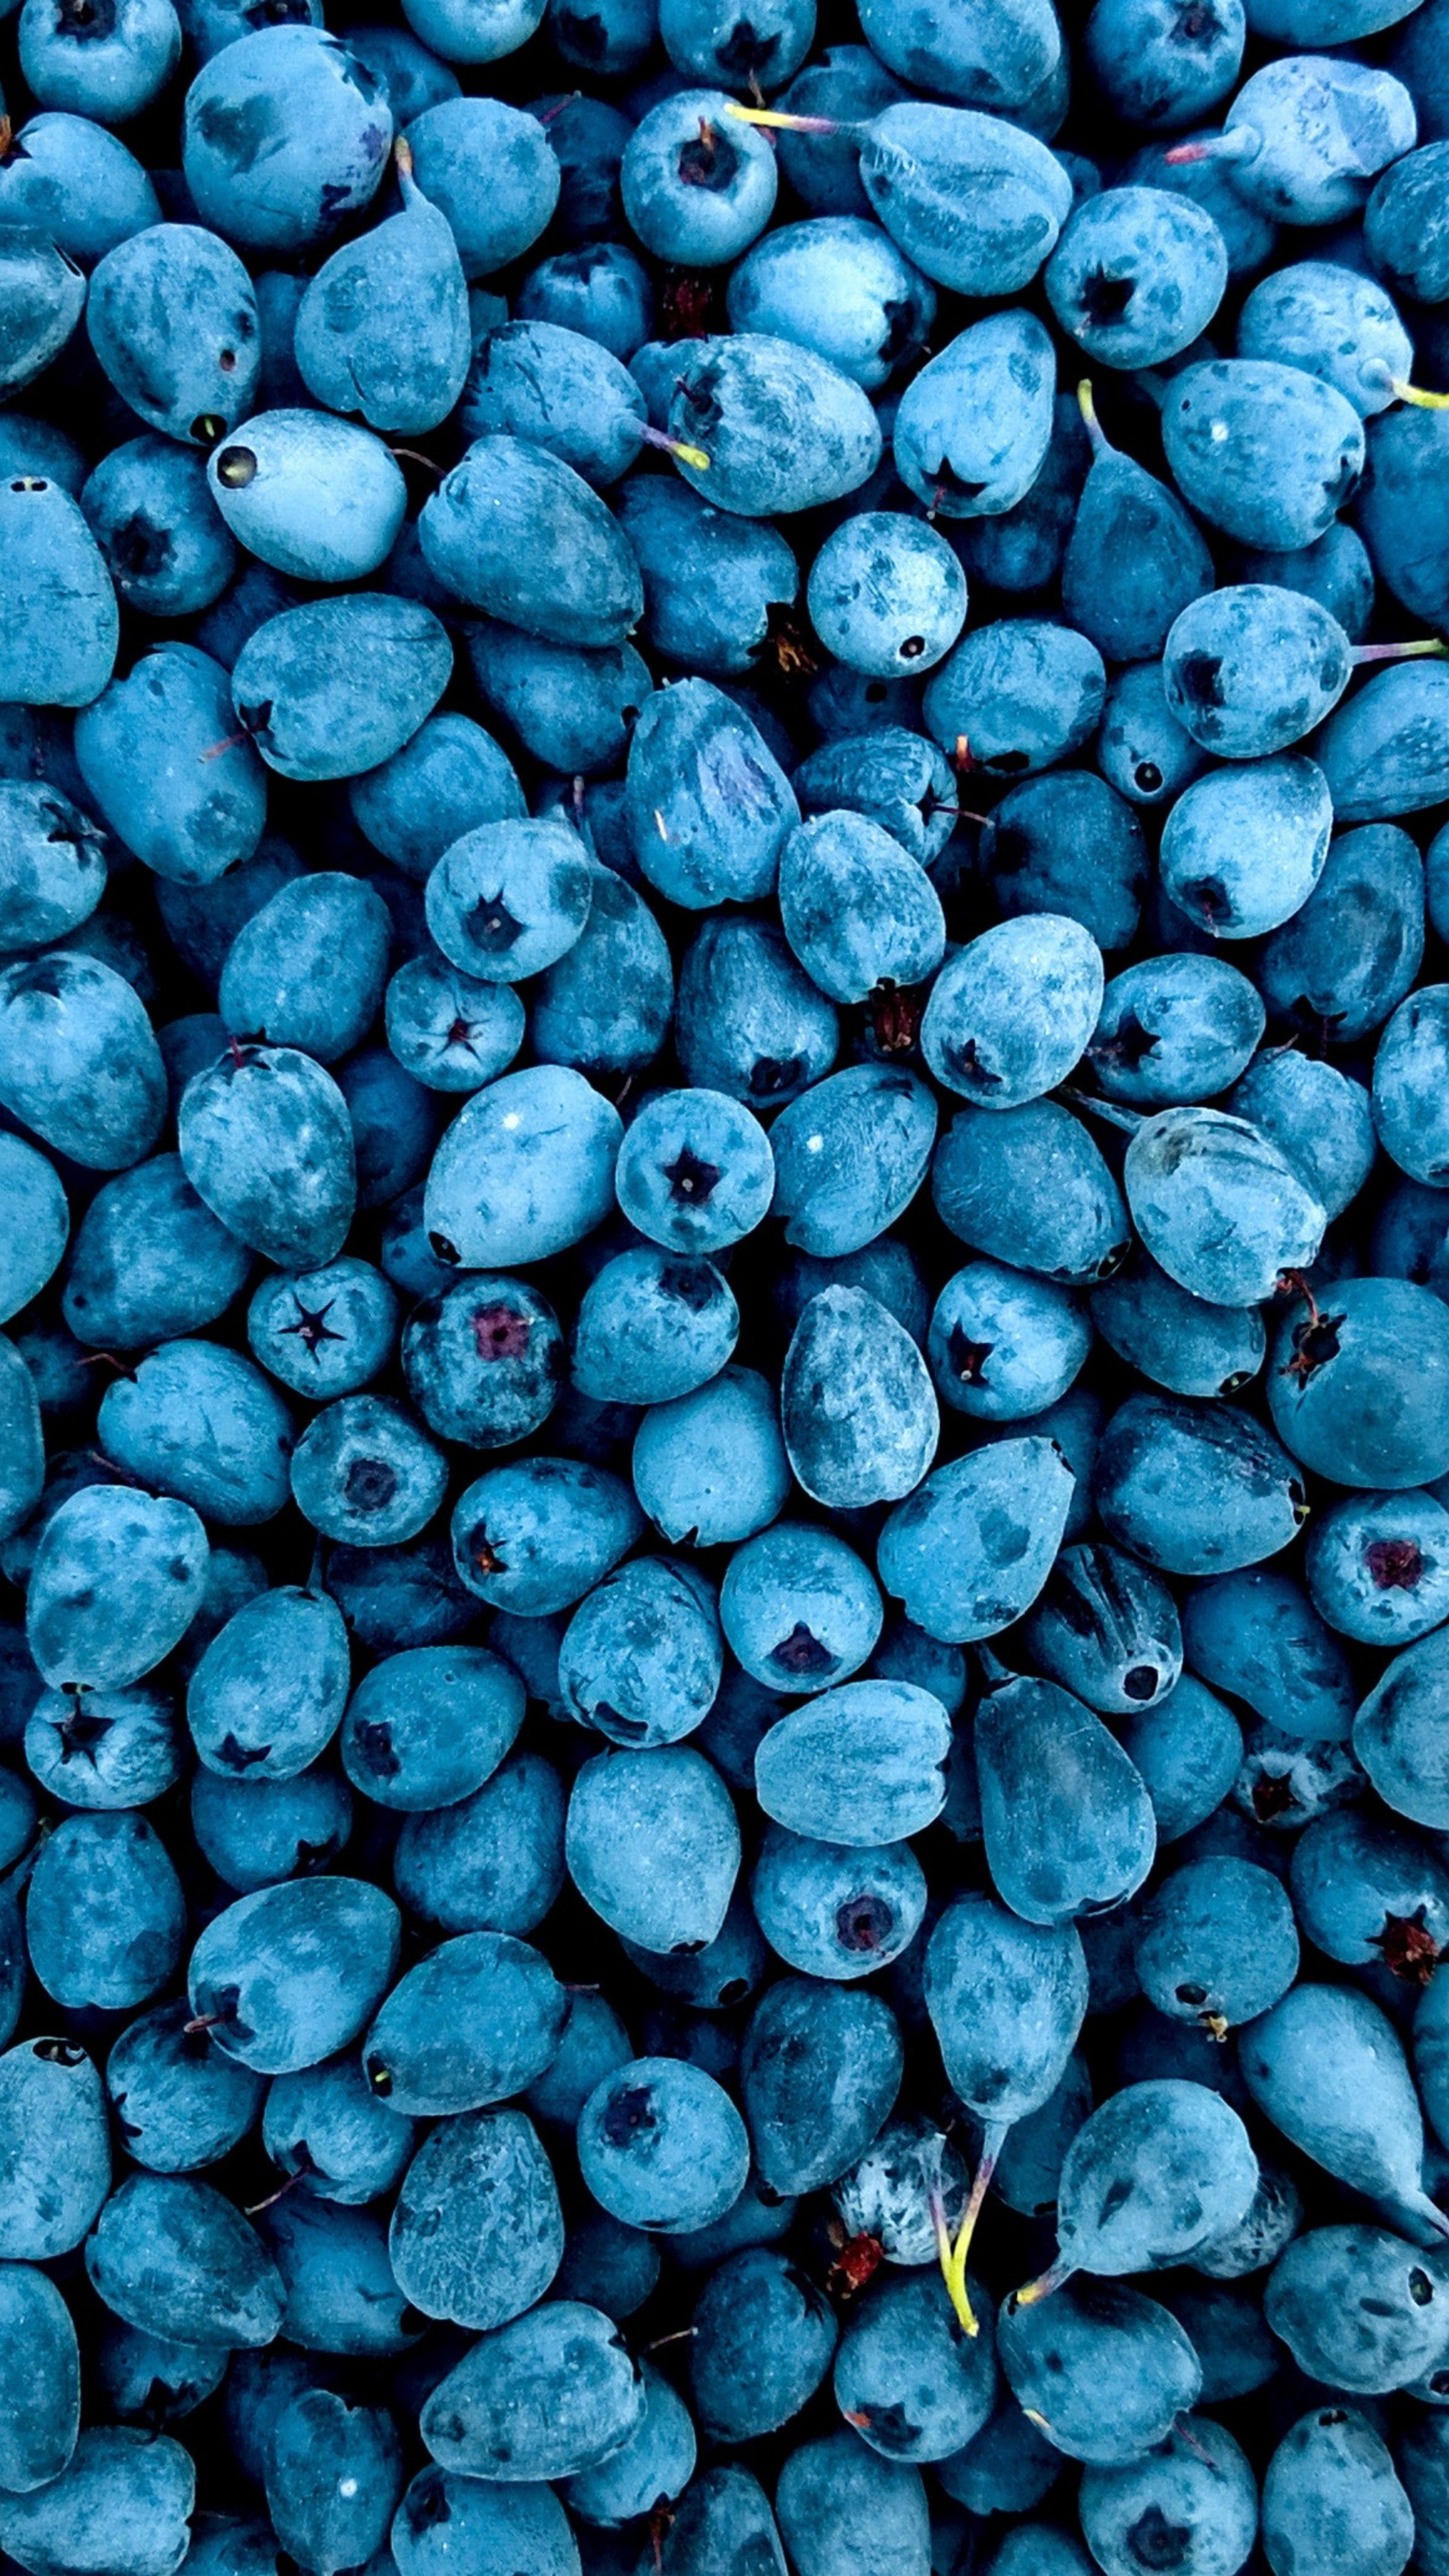 blueberries-qz.jpg